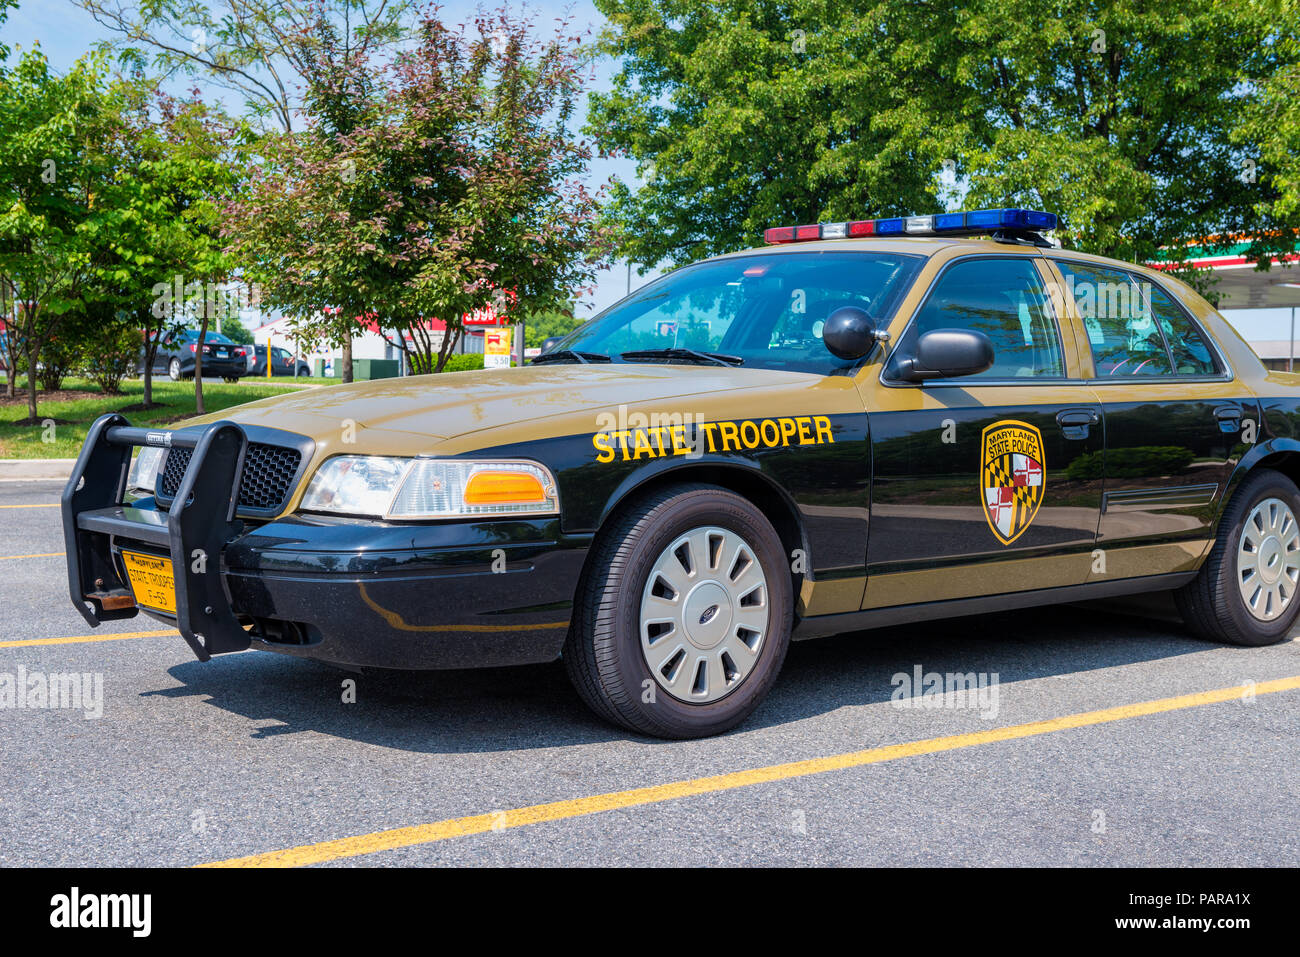 Zustand Trooper Polizei Auto von der Maryland State Police auf Parkplatz in Elkton, Maryland, USA Stockfoto